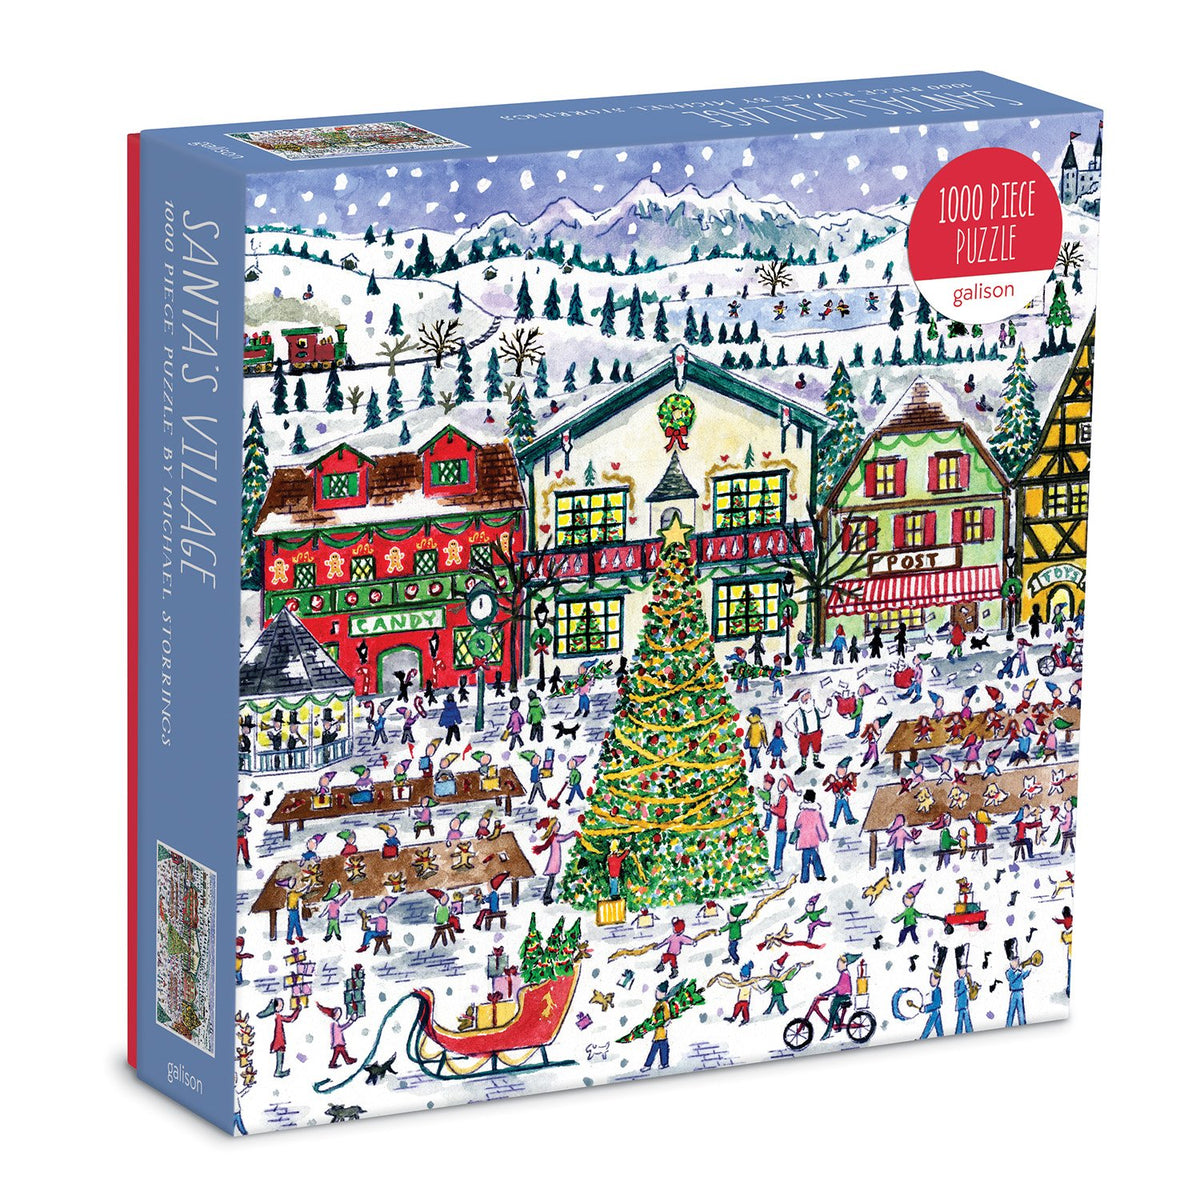 Michael Storrings Santa's Village 1000 Piece Puzzle Holiday 1000 Piece Puzzles Michael Storrings Collection 